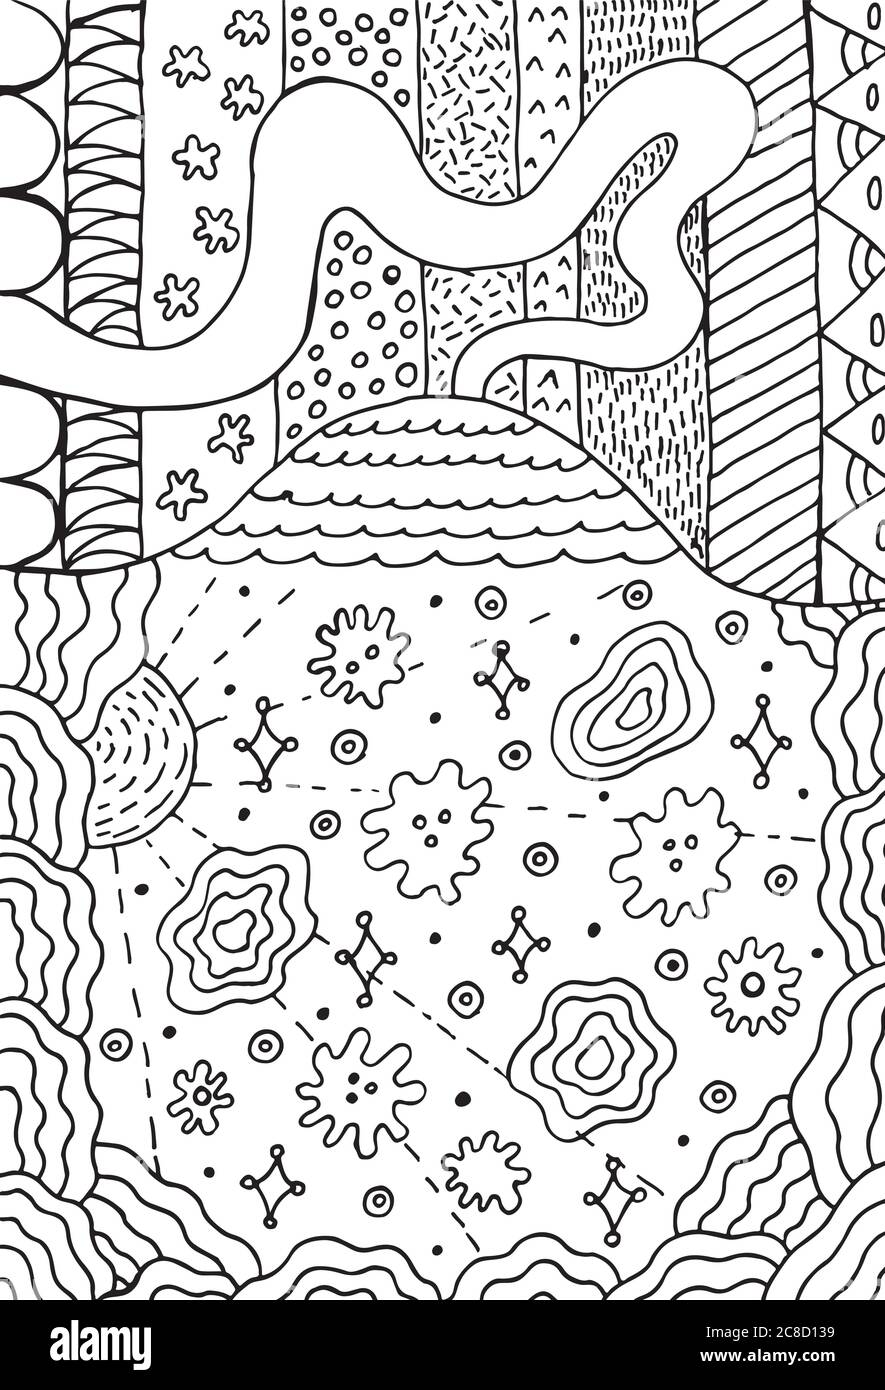 Vulkan Doodle Landschaft mit Blumenwiese. Bergzeichnung. Hand gezeichnet Malseite. Vektorgrafik Stock Vektor